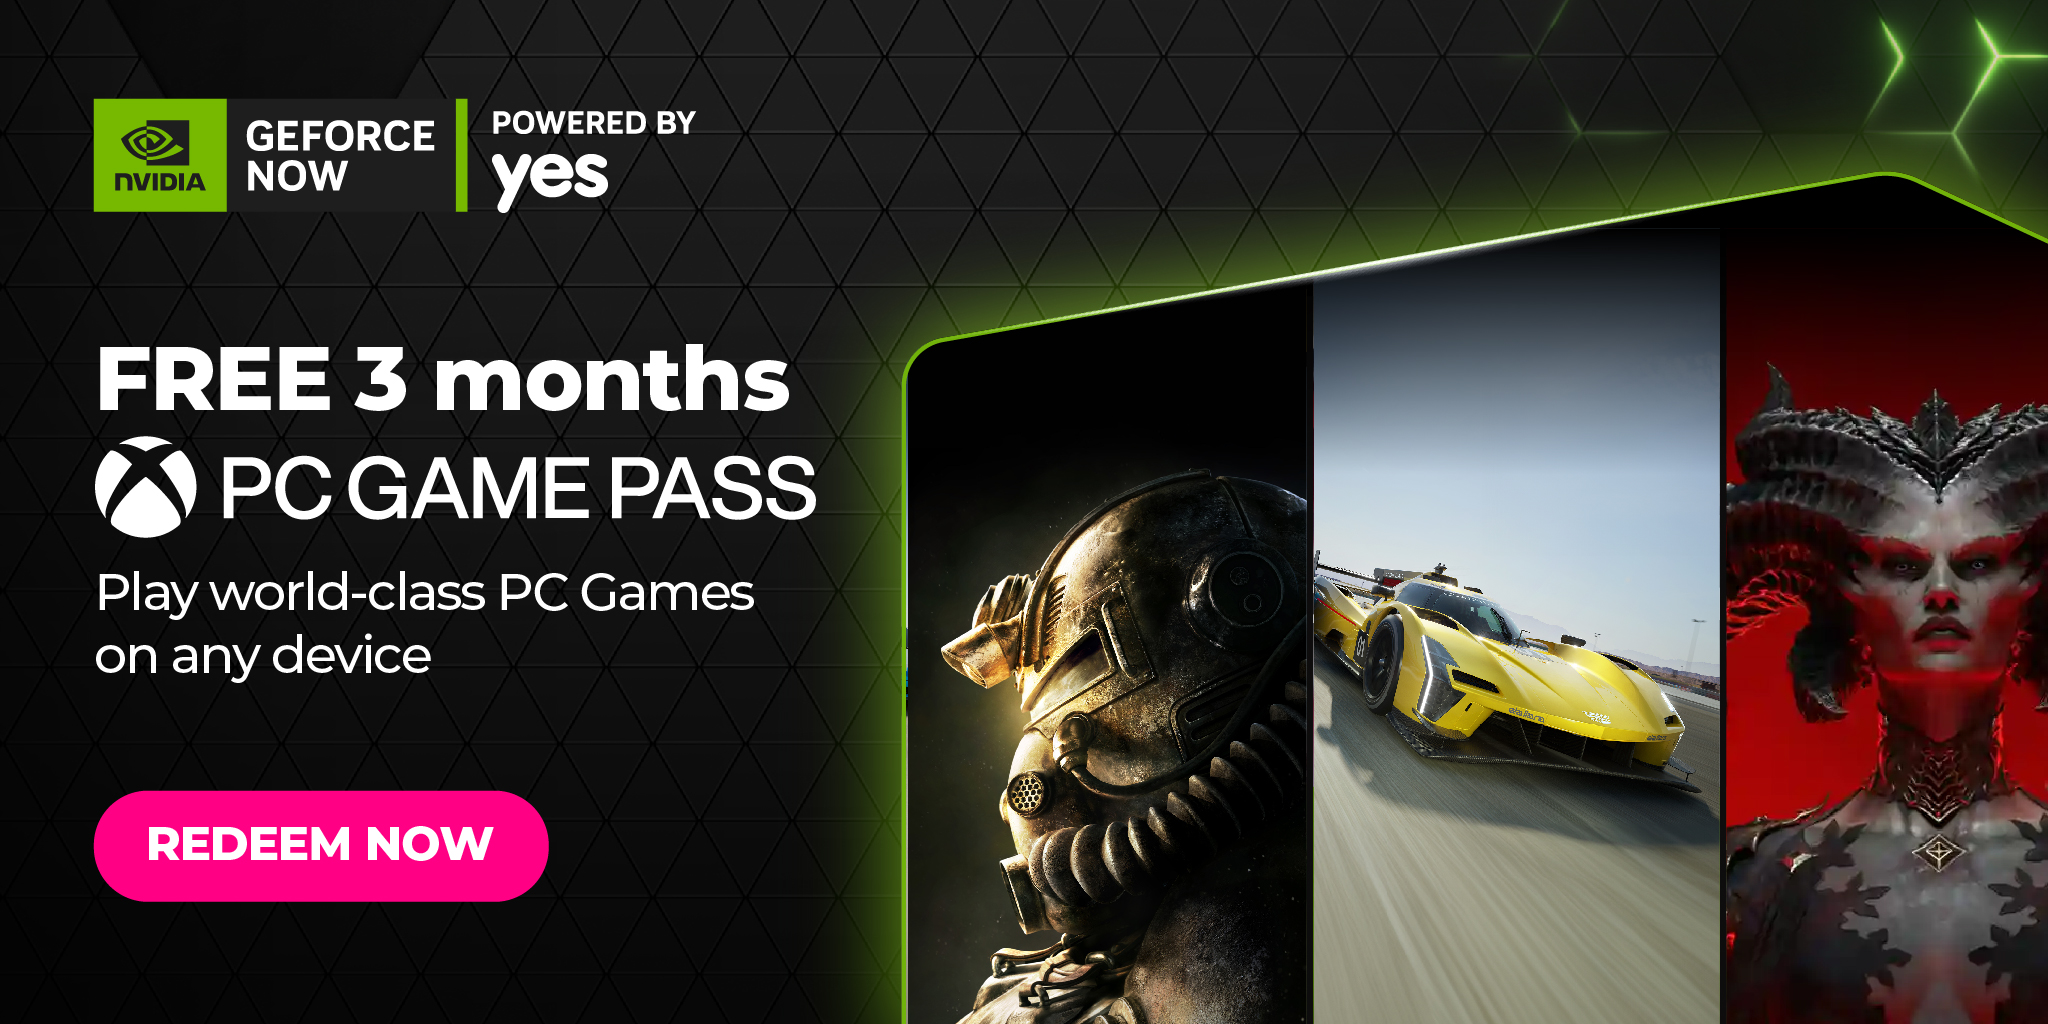 ارائه اشتراک سه ماهه رایگان PC Game Pass برای کاربران گرافیک Nvidia